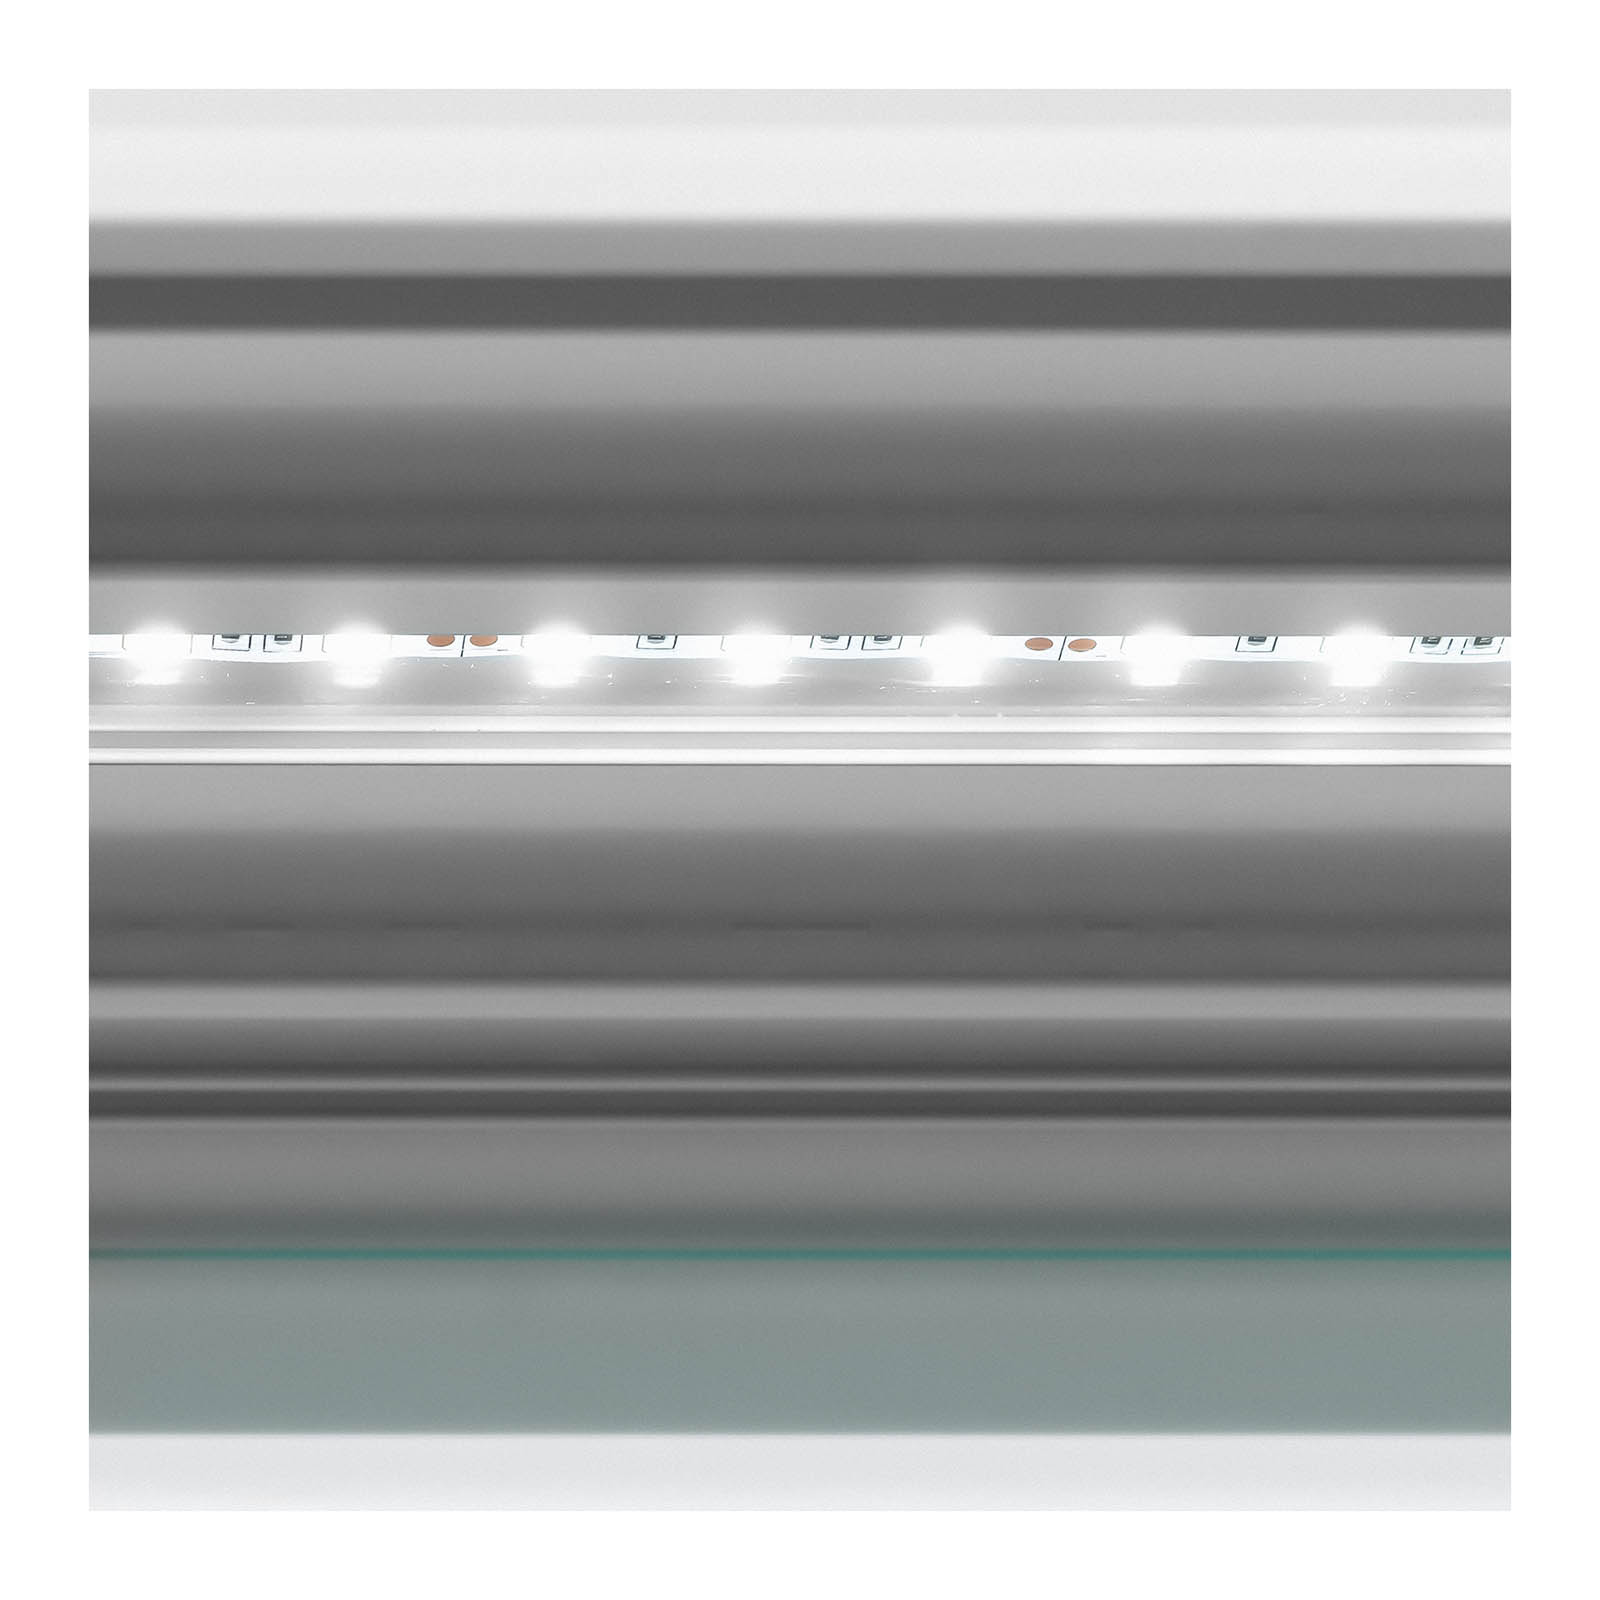 Witryna do lodów - 456 l - LED - 4 kółka - jasnozielona, srebrna